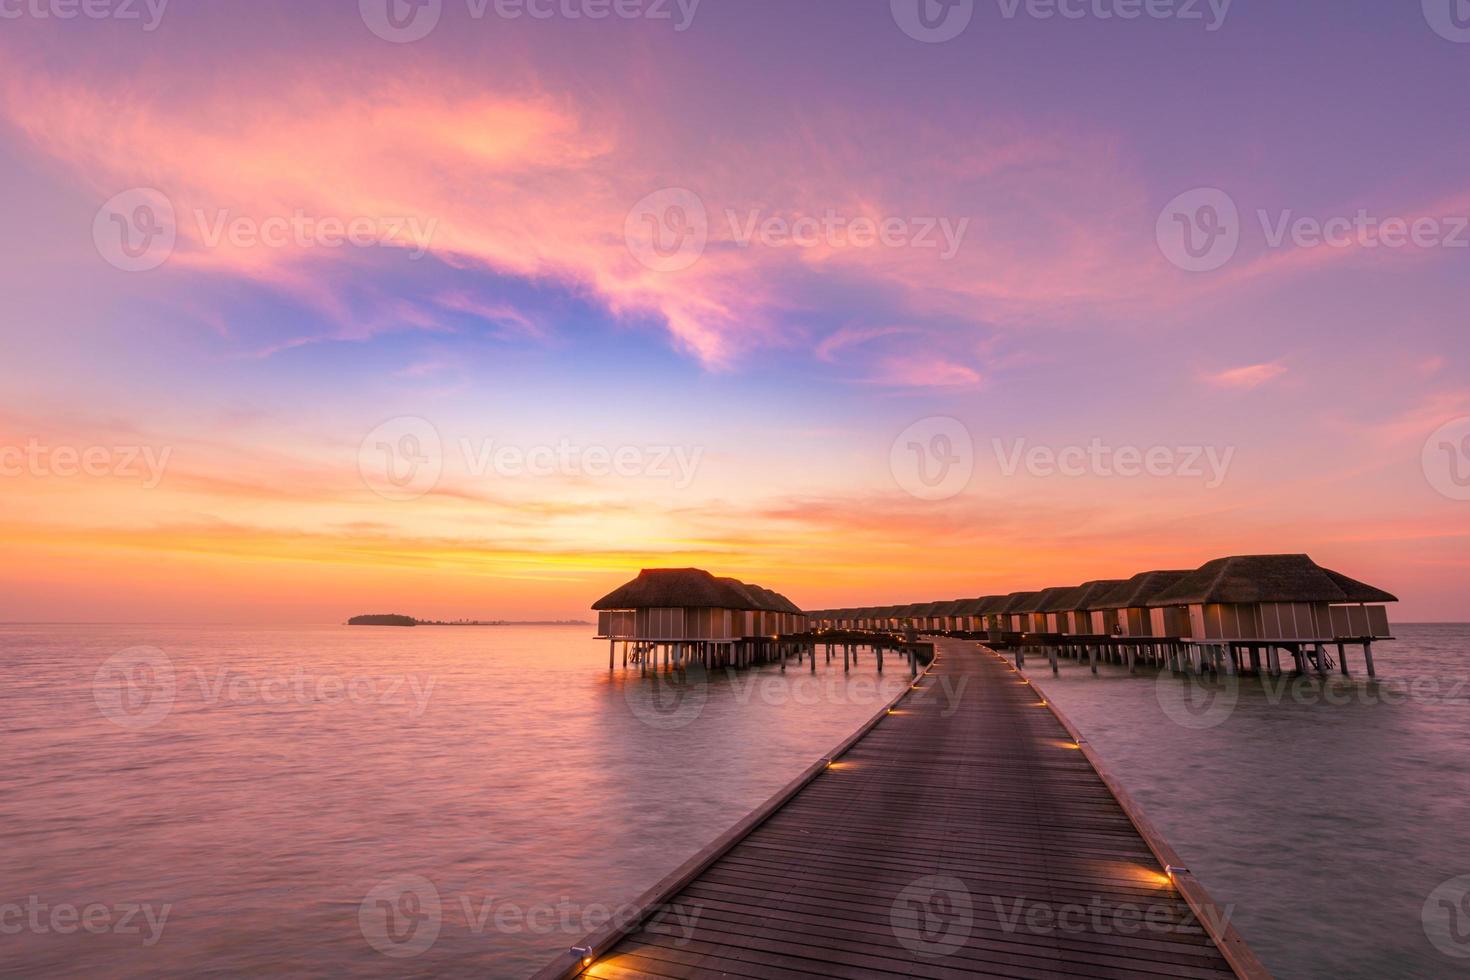 increíble panorama de la puesta de sol en maldivas. Villas de resort de lujo marino con luces LED suaves bajo un cielo de colores. hermoso cielo crepuscular y nubes de colores. hermoso fondo de playa para vacaciones vacaciones foto